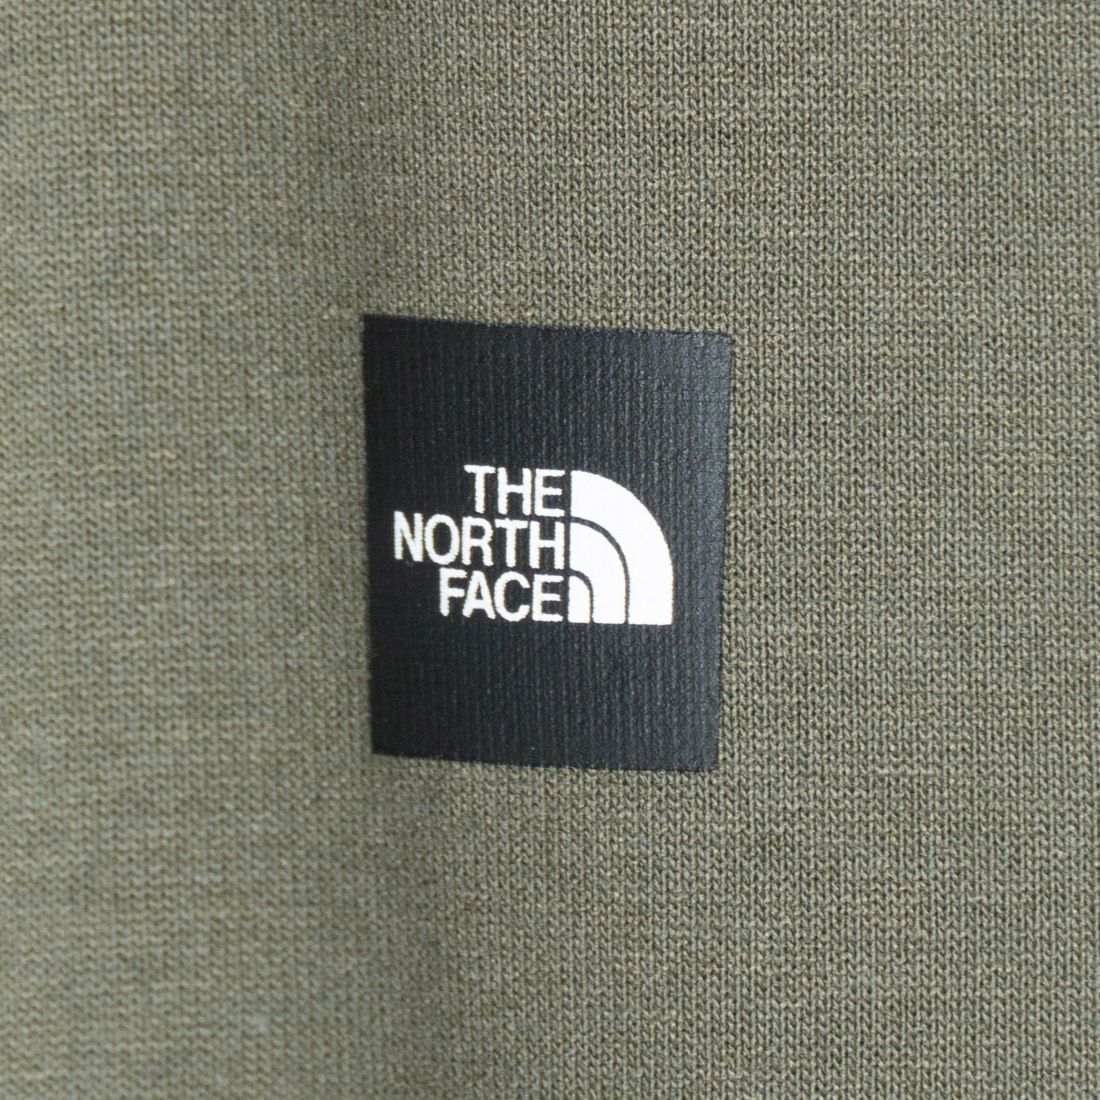 THE NORTH FACE [ザ ノースフェイス] ショートスリーブ スモールボックスロゴTシャツ [NT32445]